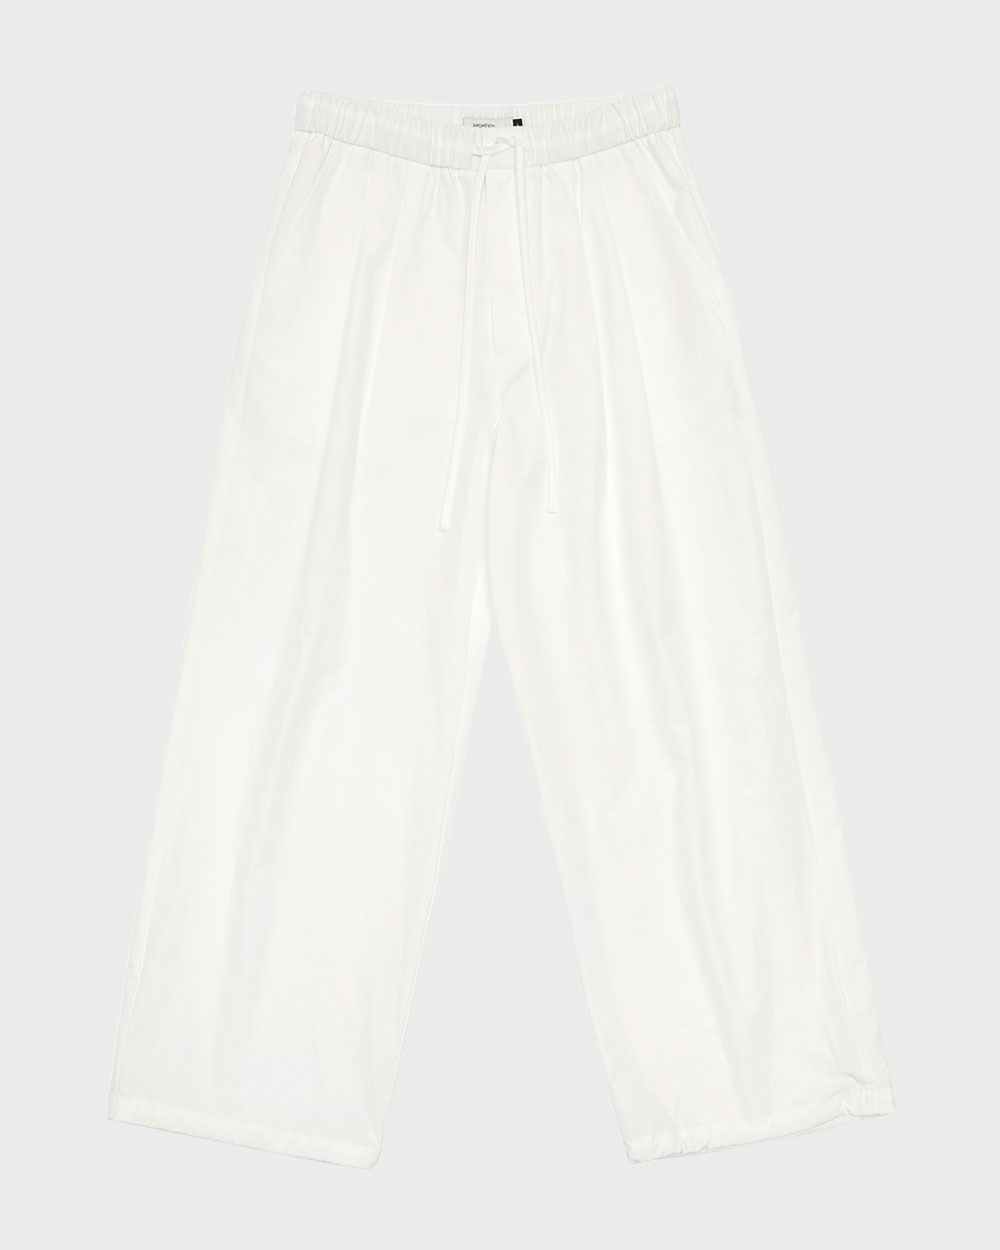 Drawstring Pants (White)